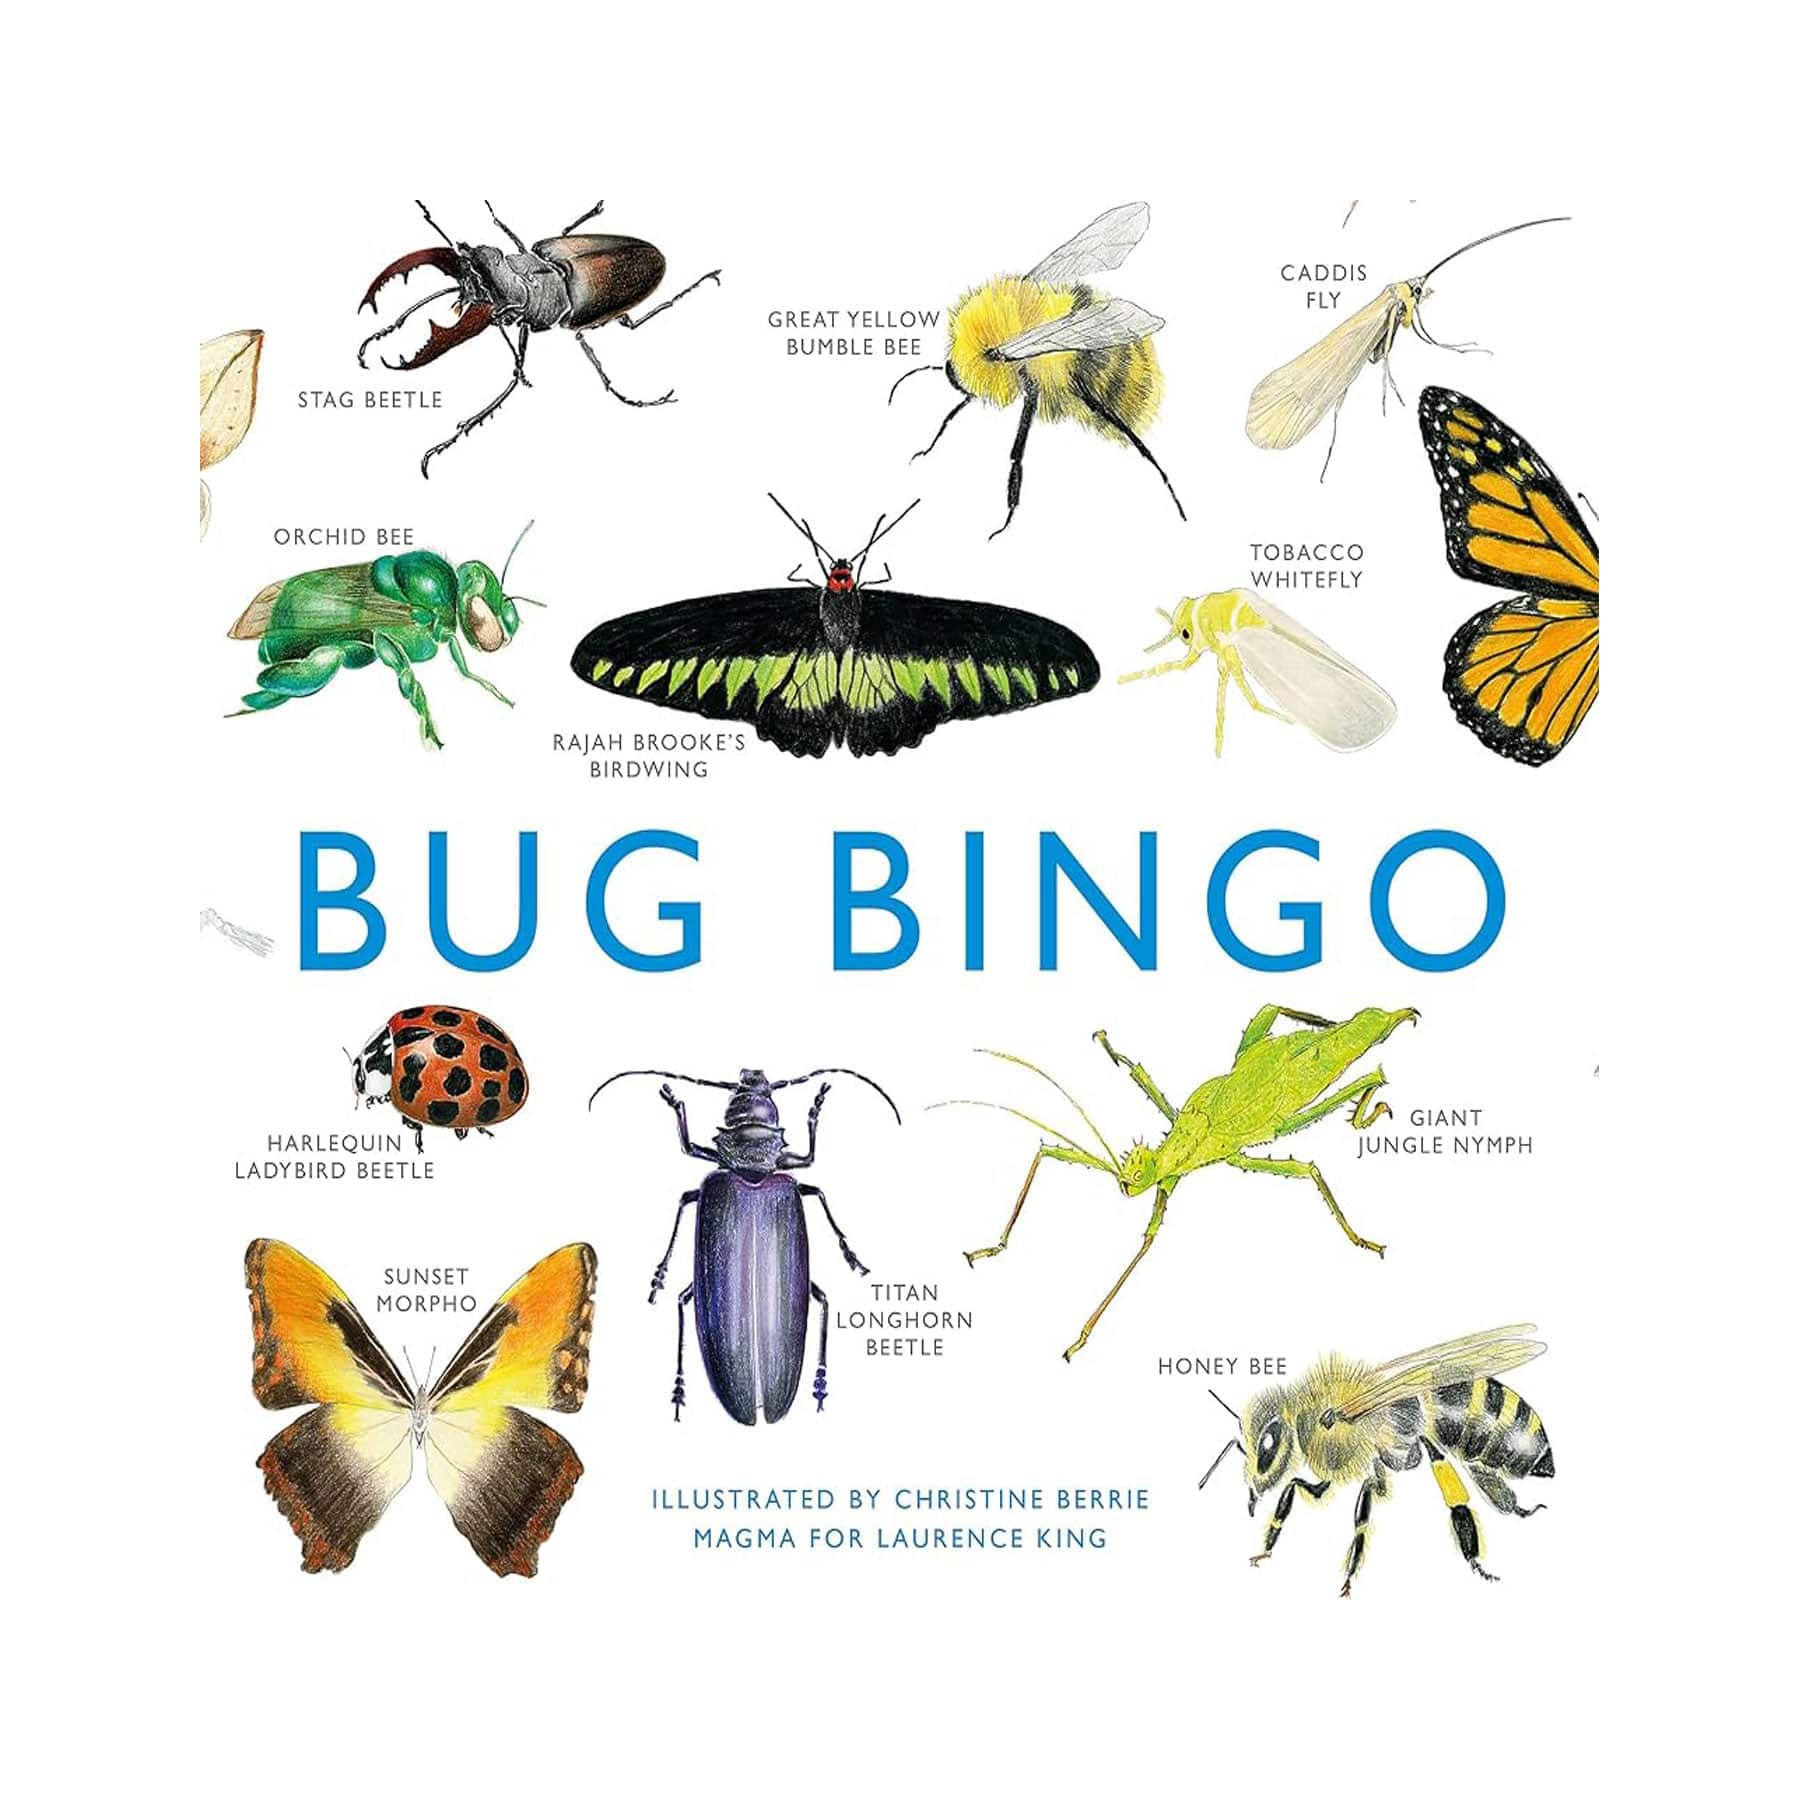 Bug bingo